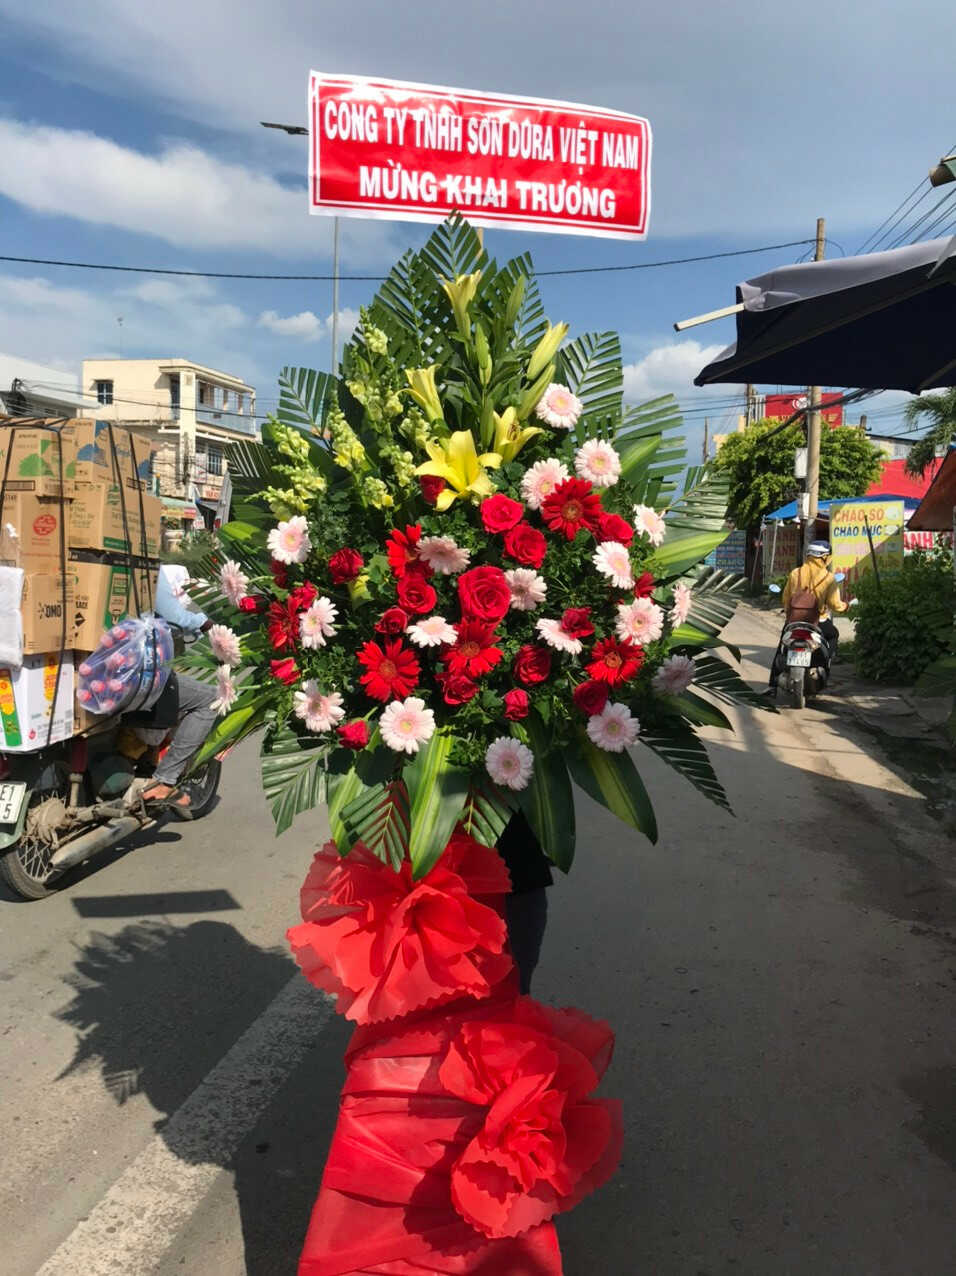 Hoa khai trương ở Tiệm hoa tươi Bến Cầu, Tây Ninh